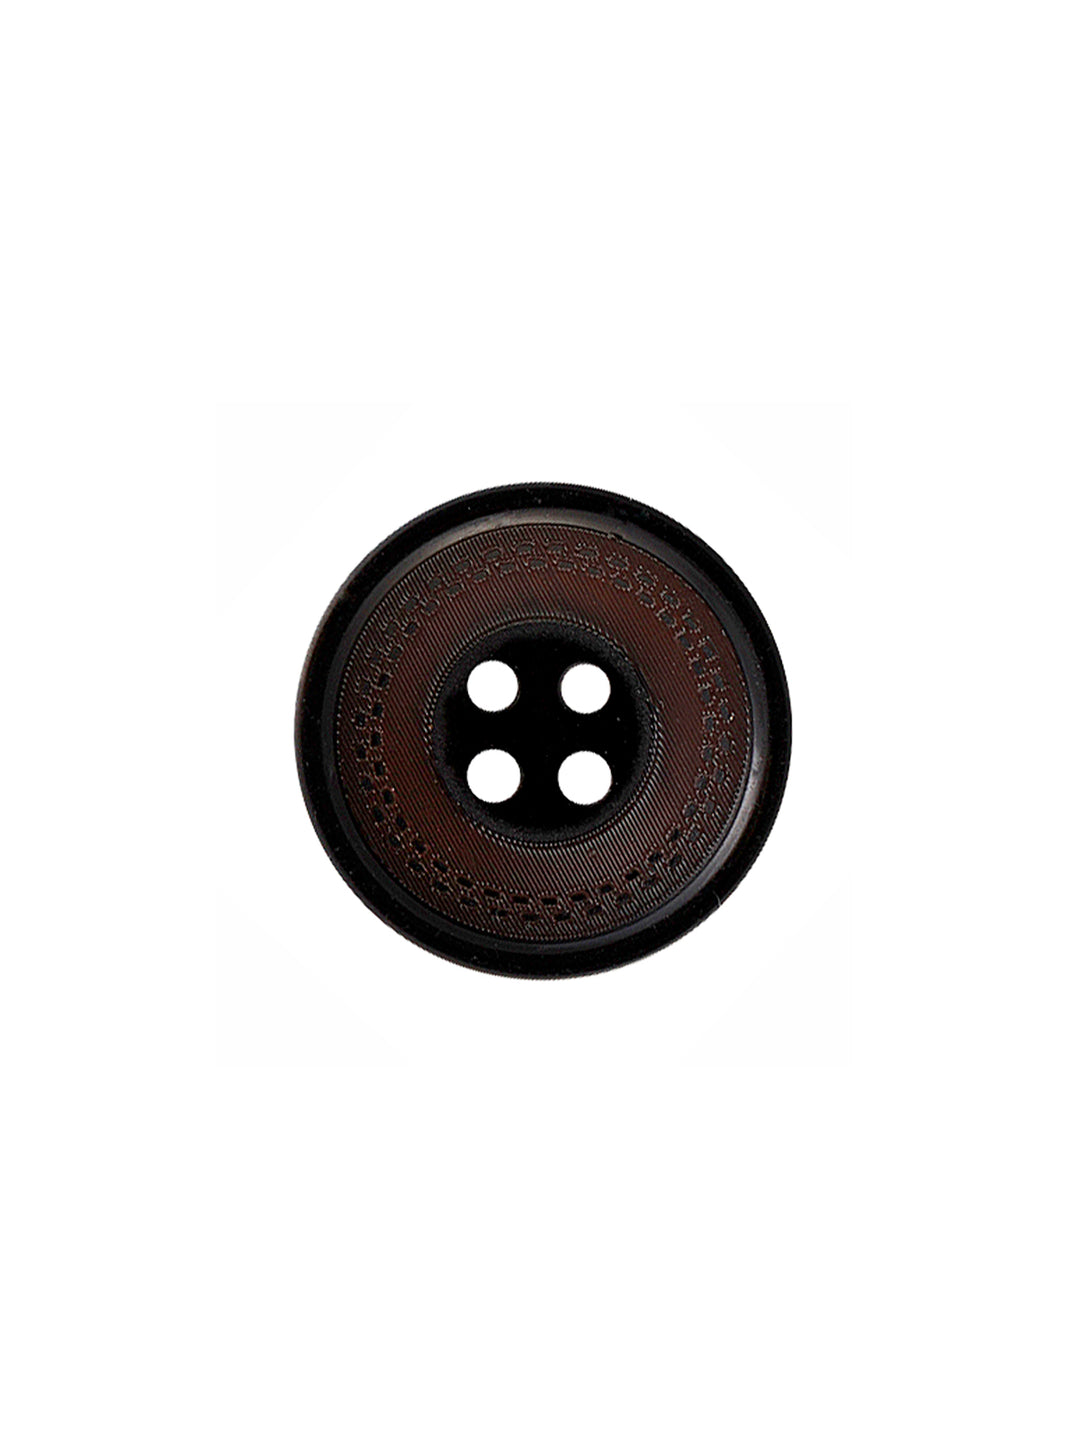 Super Elegance Round Shape 4-Hole Shiny Blazer/Coat Button